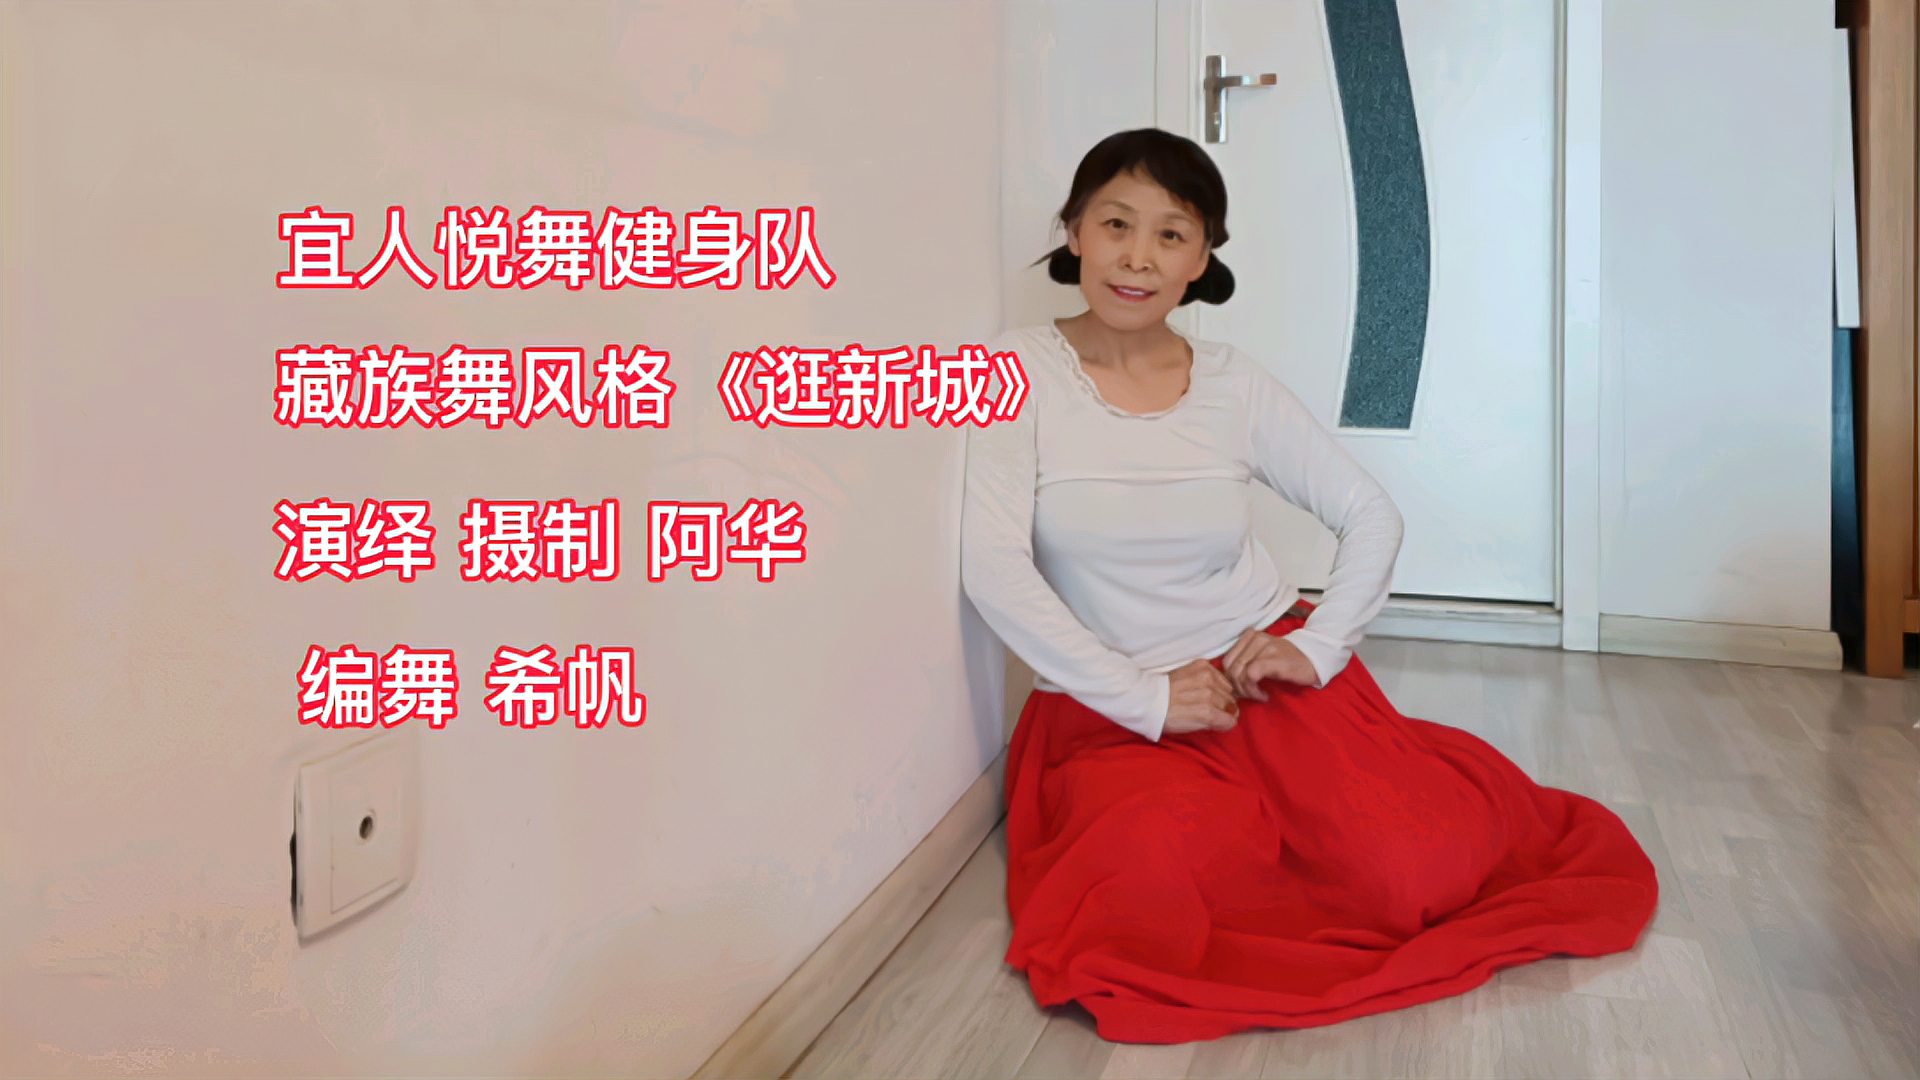 网红唯美藏族舞 《逛新城》,欢快简单好学,基础广场舞